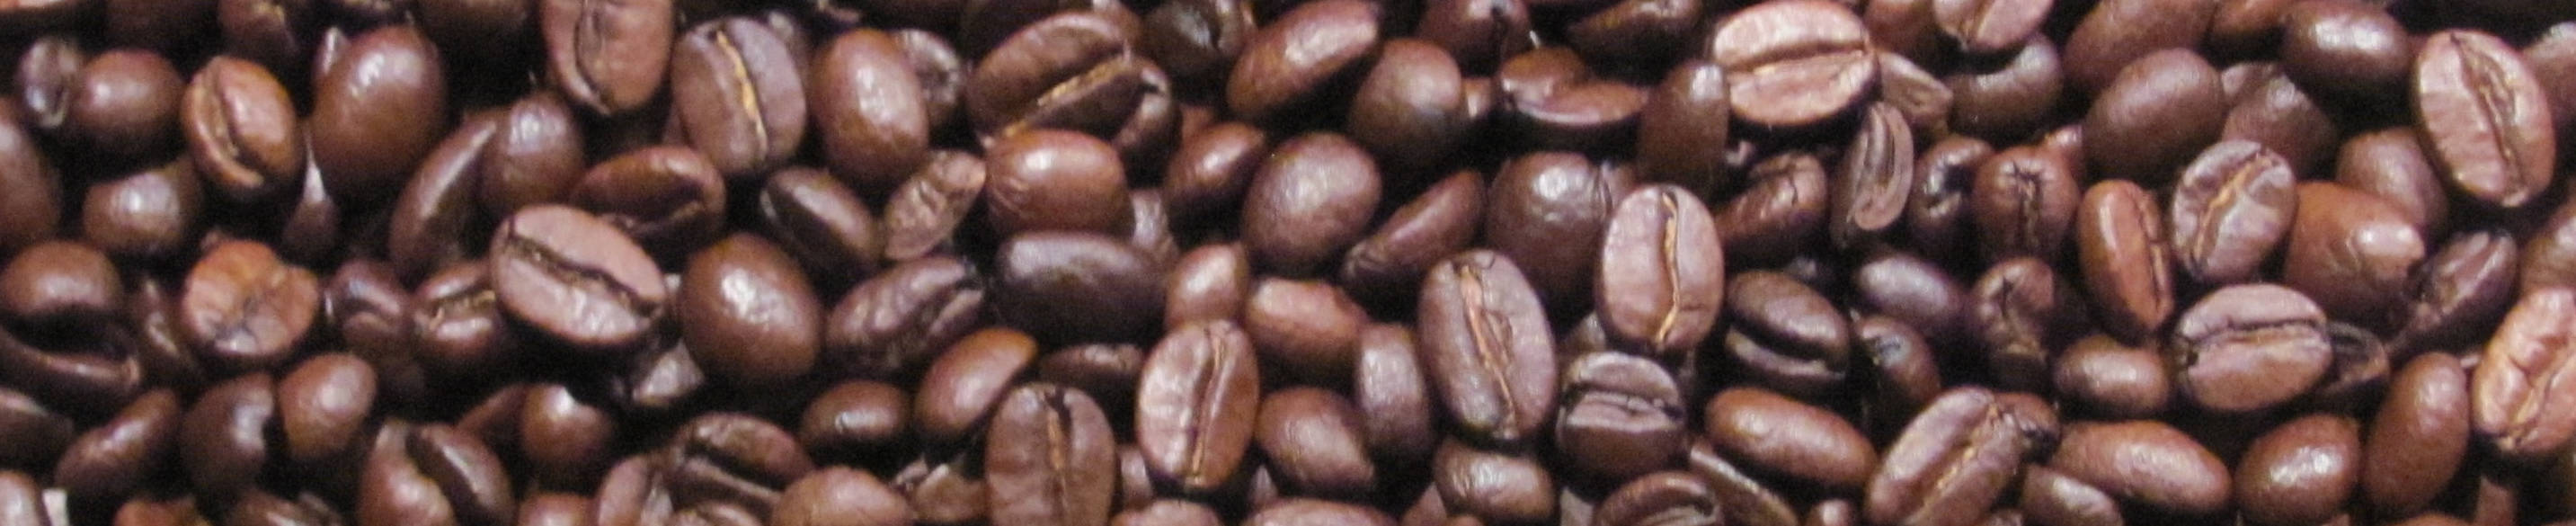 Ein Bannerbild mit espresso bohnen